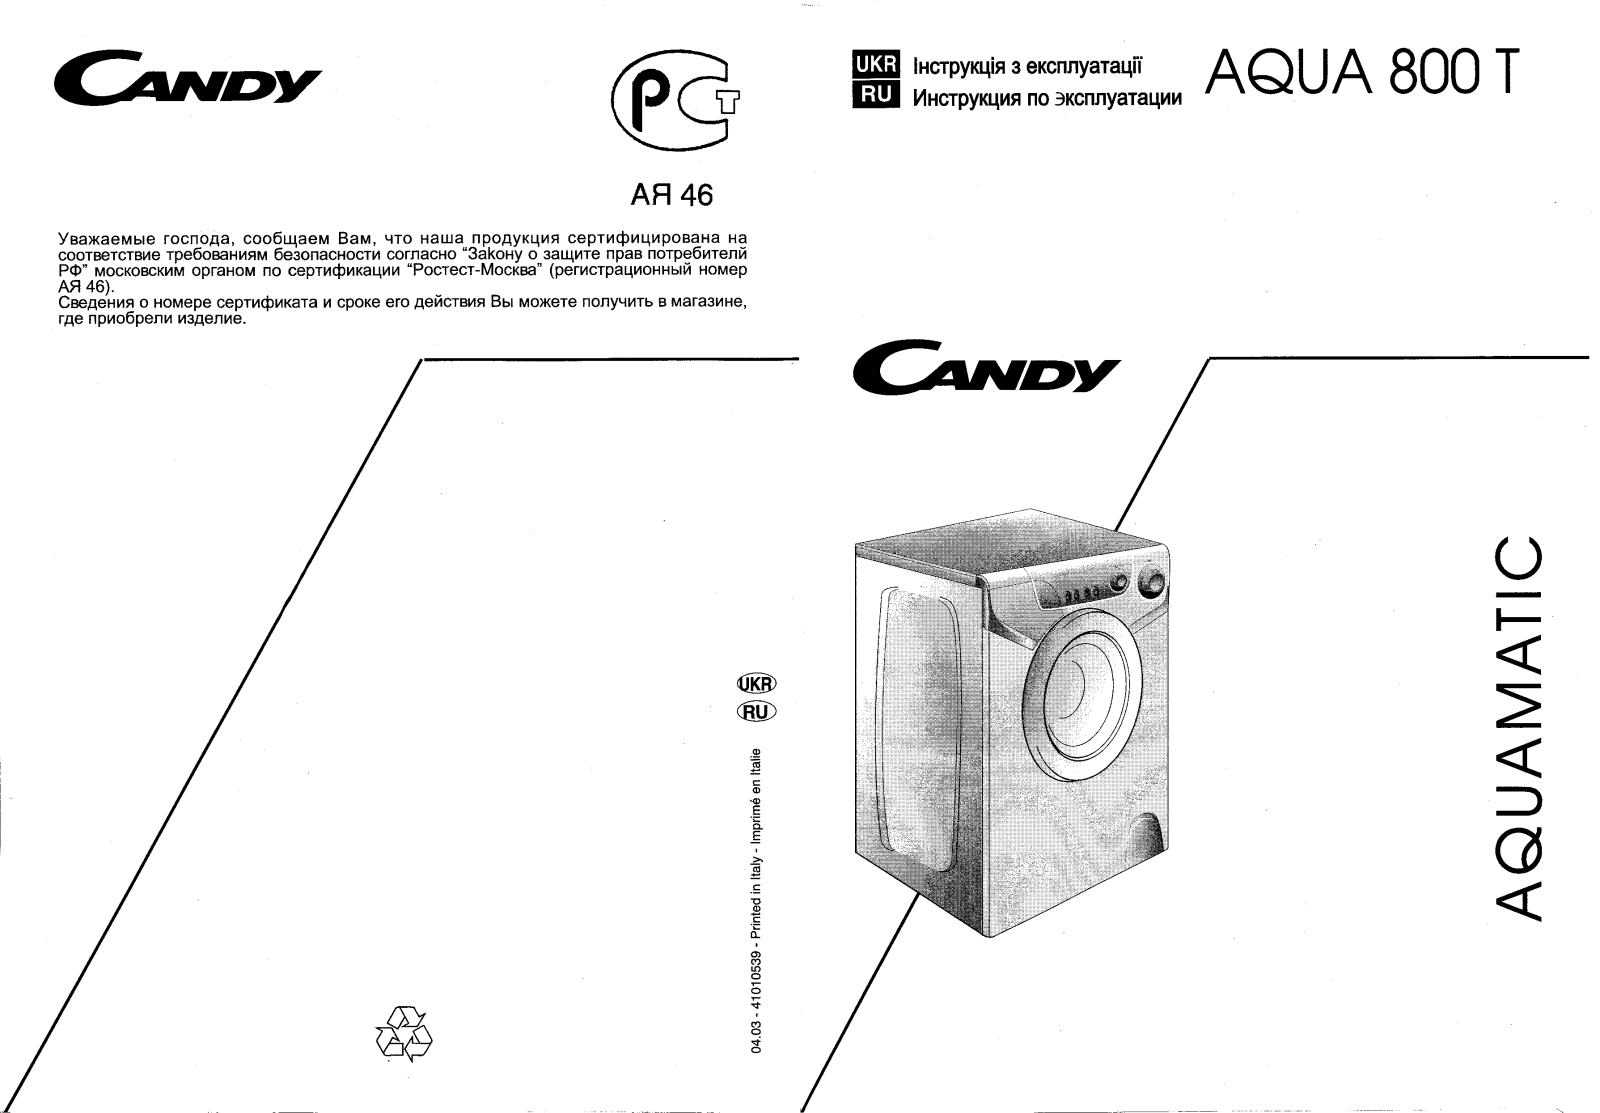 Candy AQUA 800 T User Manual